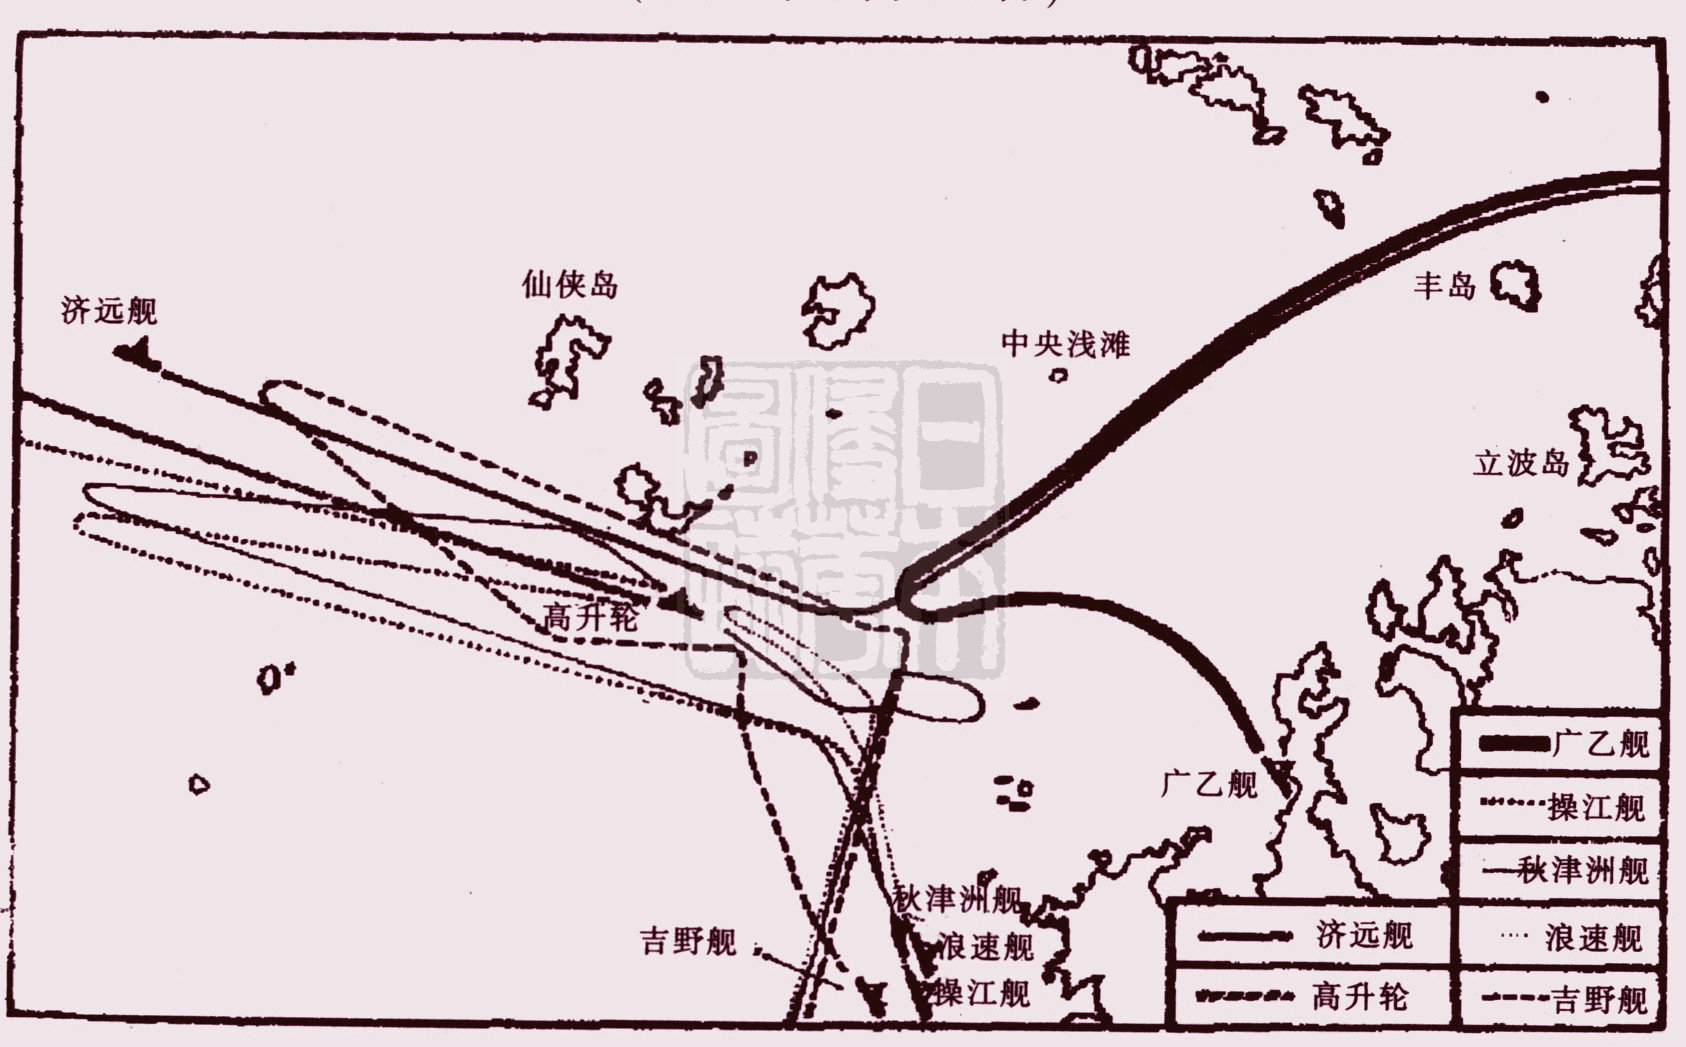 1894年7月25日丰岛海战示意图.